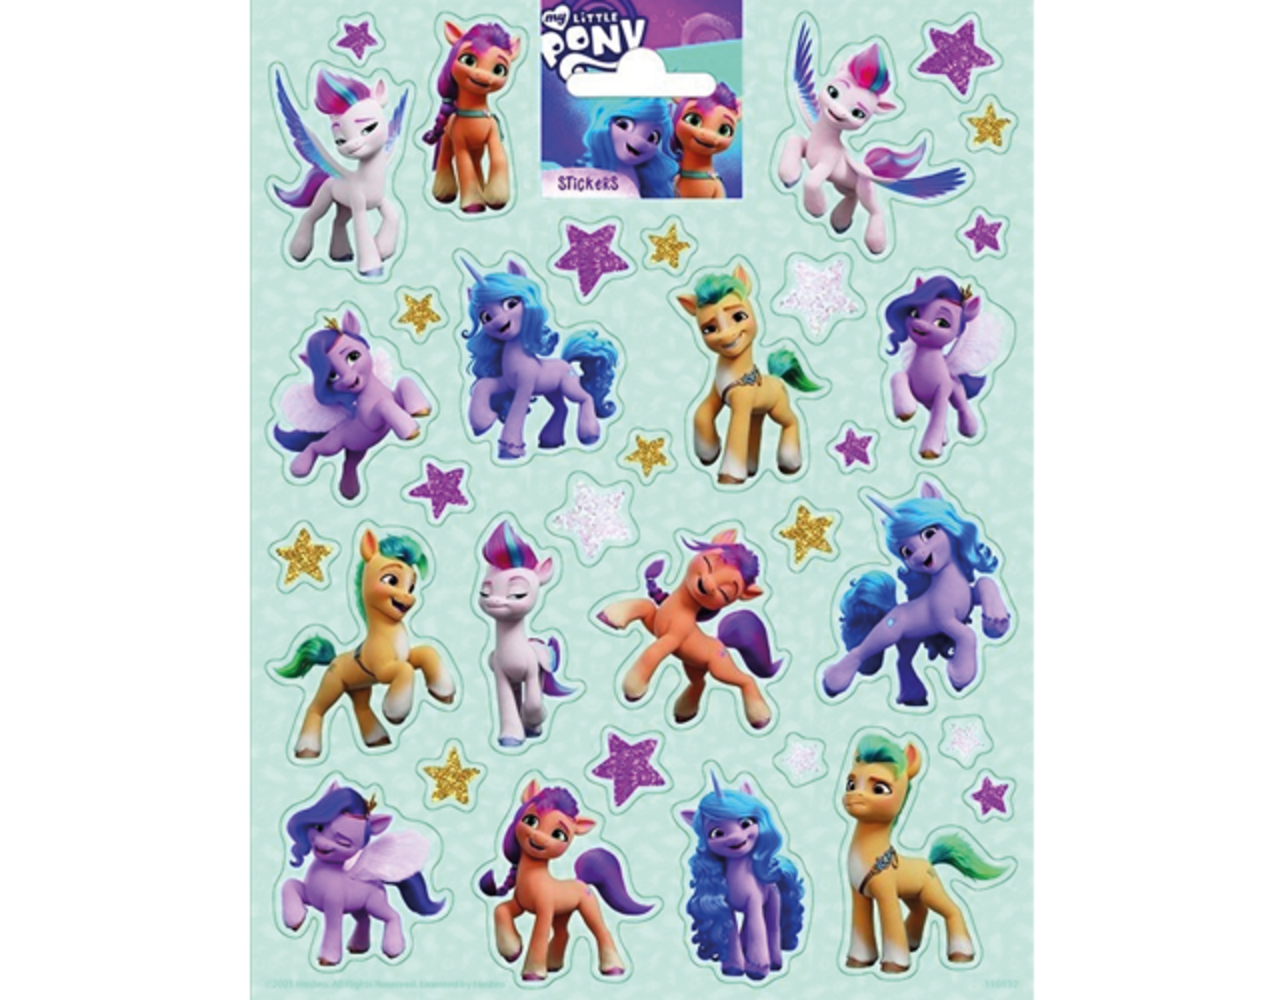 Onvergetelijk Vervolgen gordijn My Little Pony Stickers Groot - Partywinkel